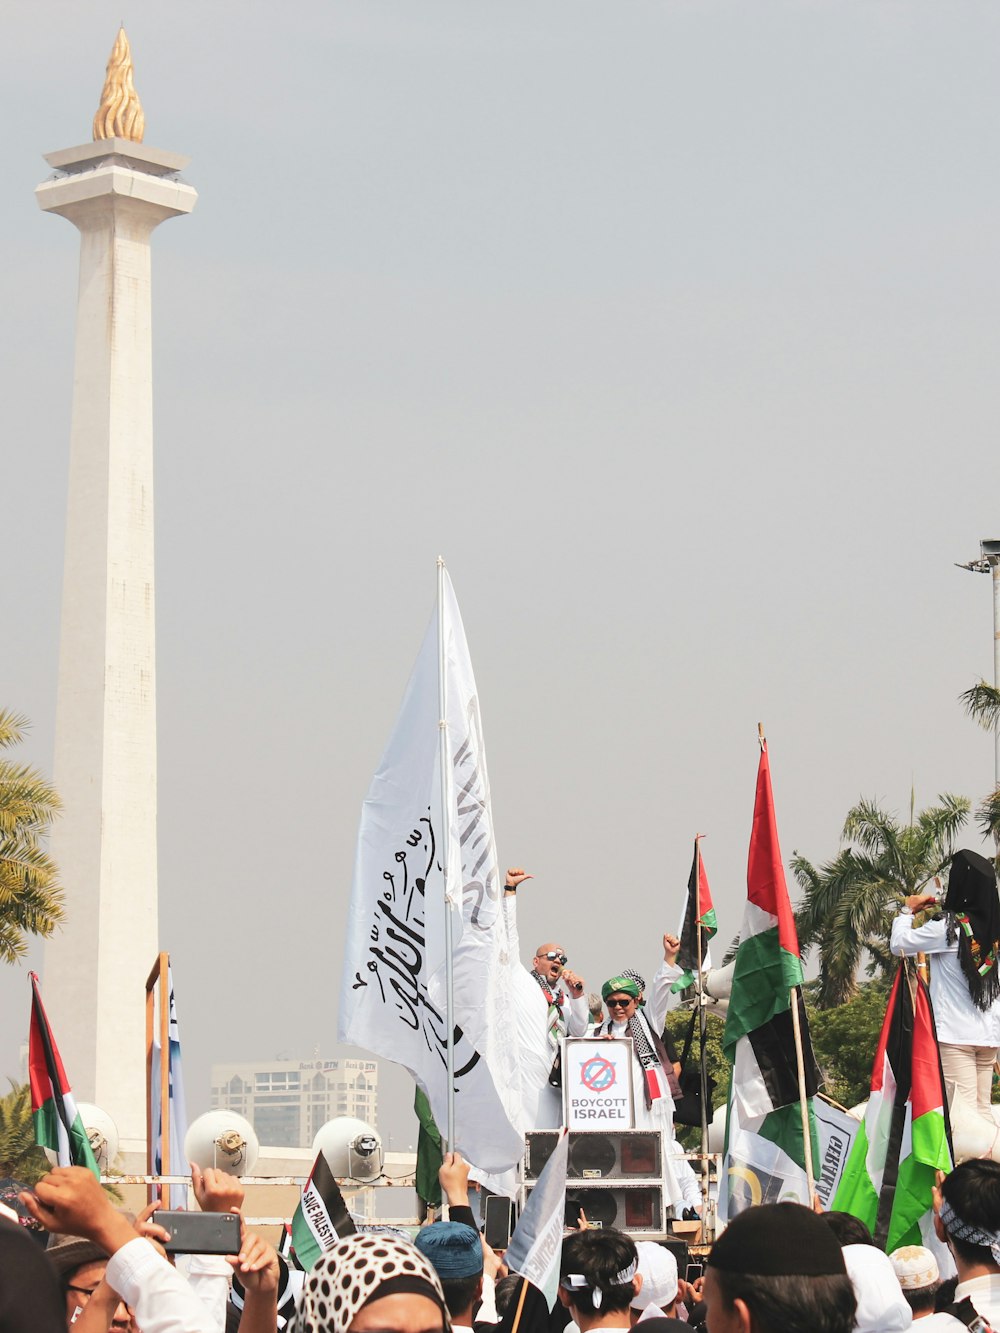 un folto gruppo di persone che reggono bandiere davanti a un monumento